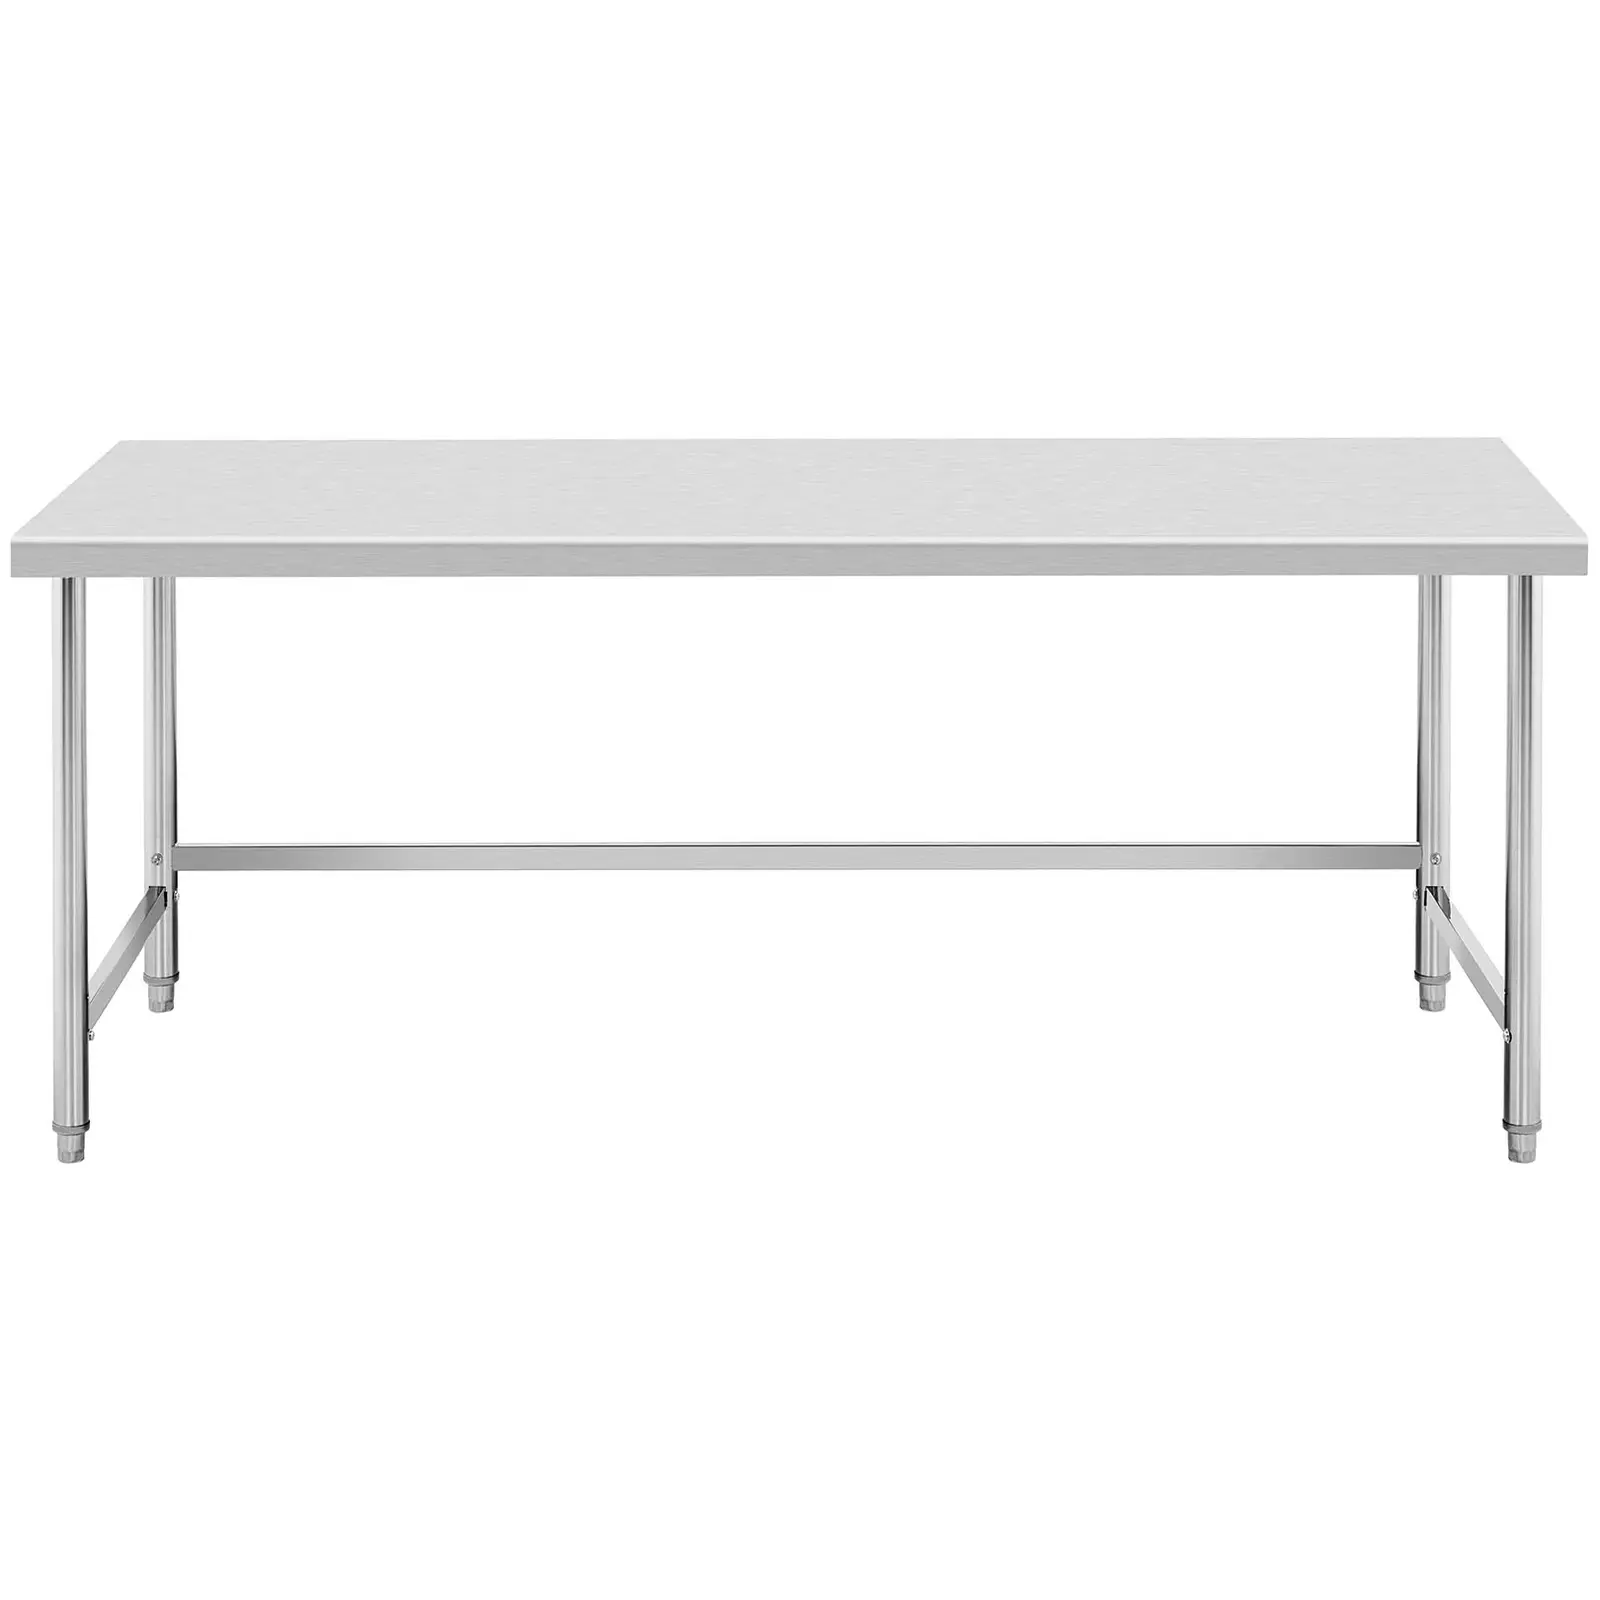 Pracovný stôl z nehrdzavejúcej ocele - 200 x 60 cm - nosnosť 95 kg